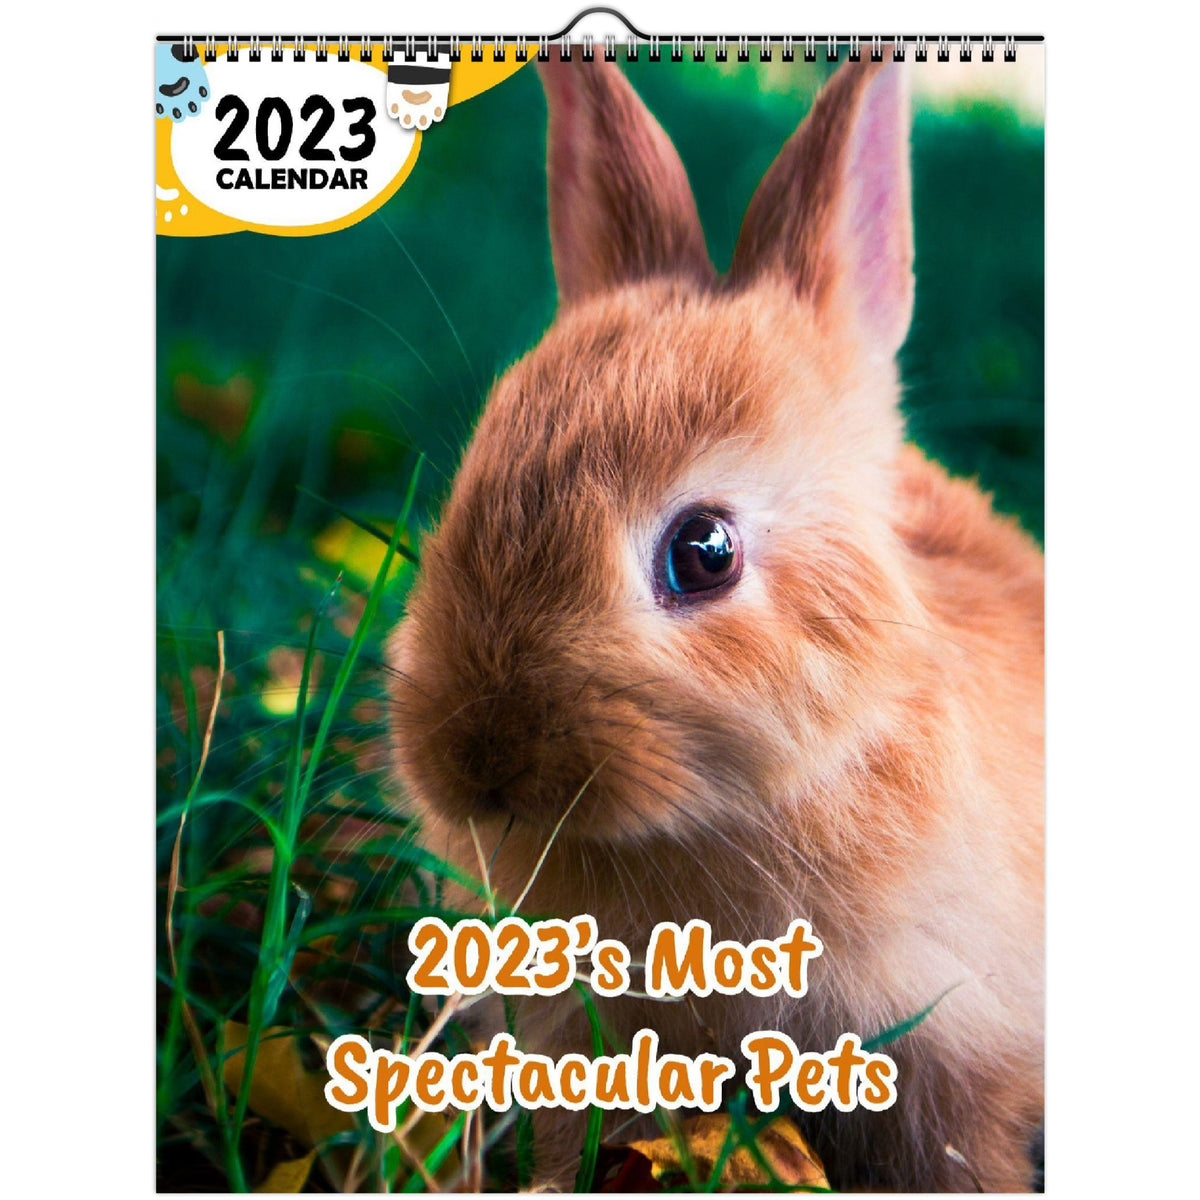 2023's Most Spectacular Pets 2023 Wall Calendar The Blissful Birder